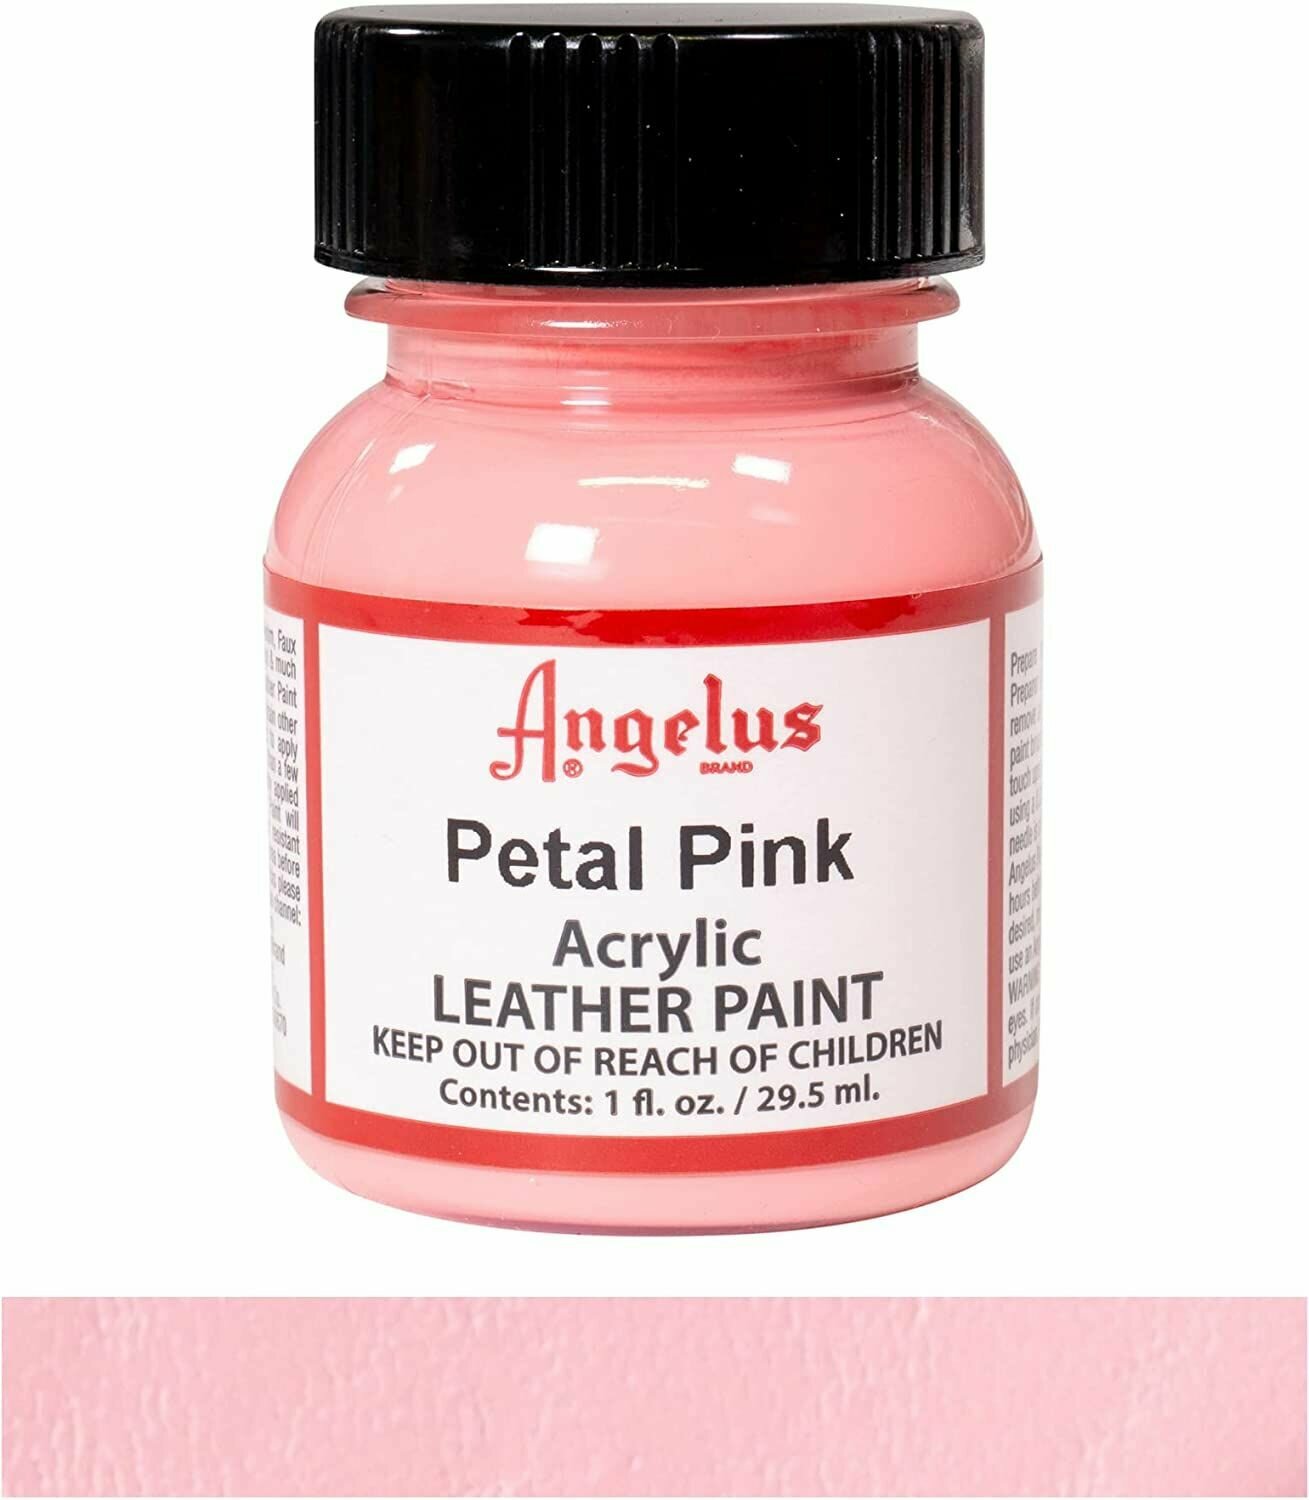 Акриловая художественная краска Angelus для ткани и кожи, Petal pink 189 (нежно-розовый), 29.5 мл